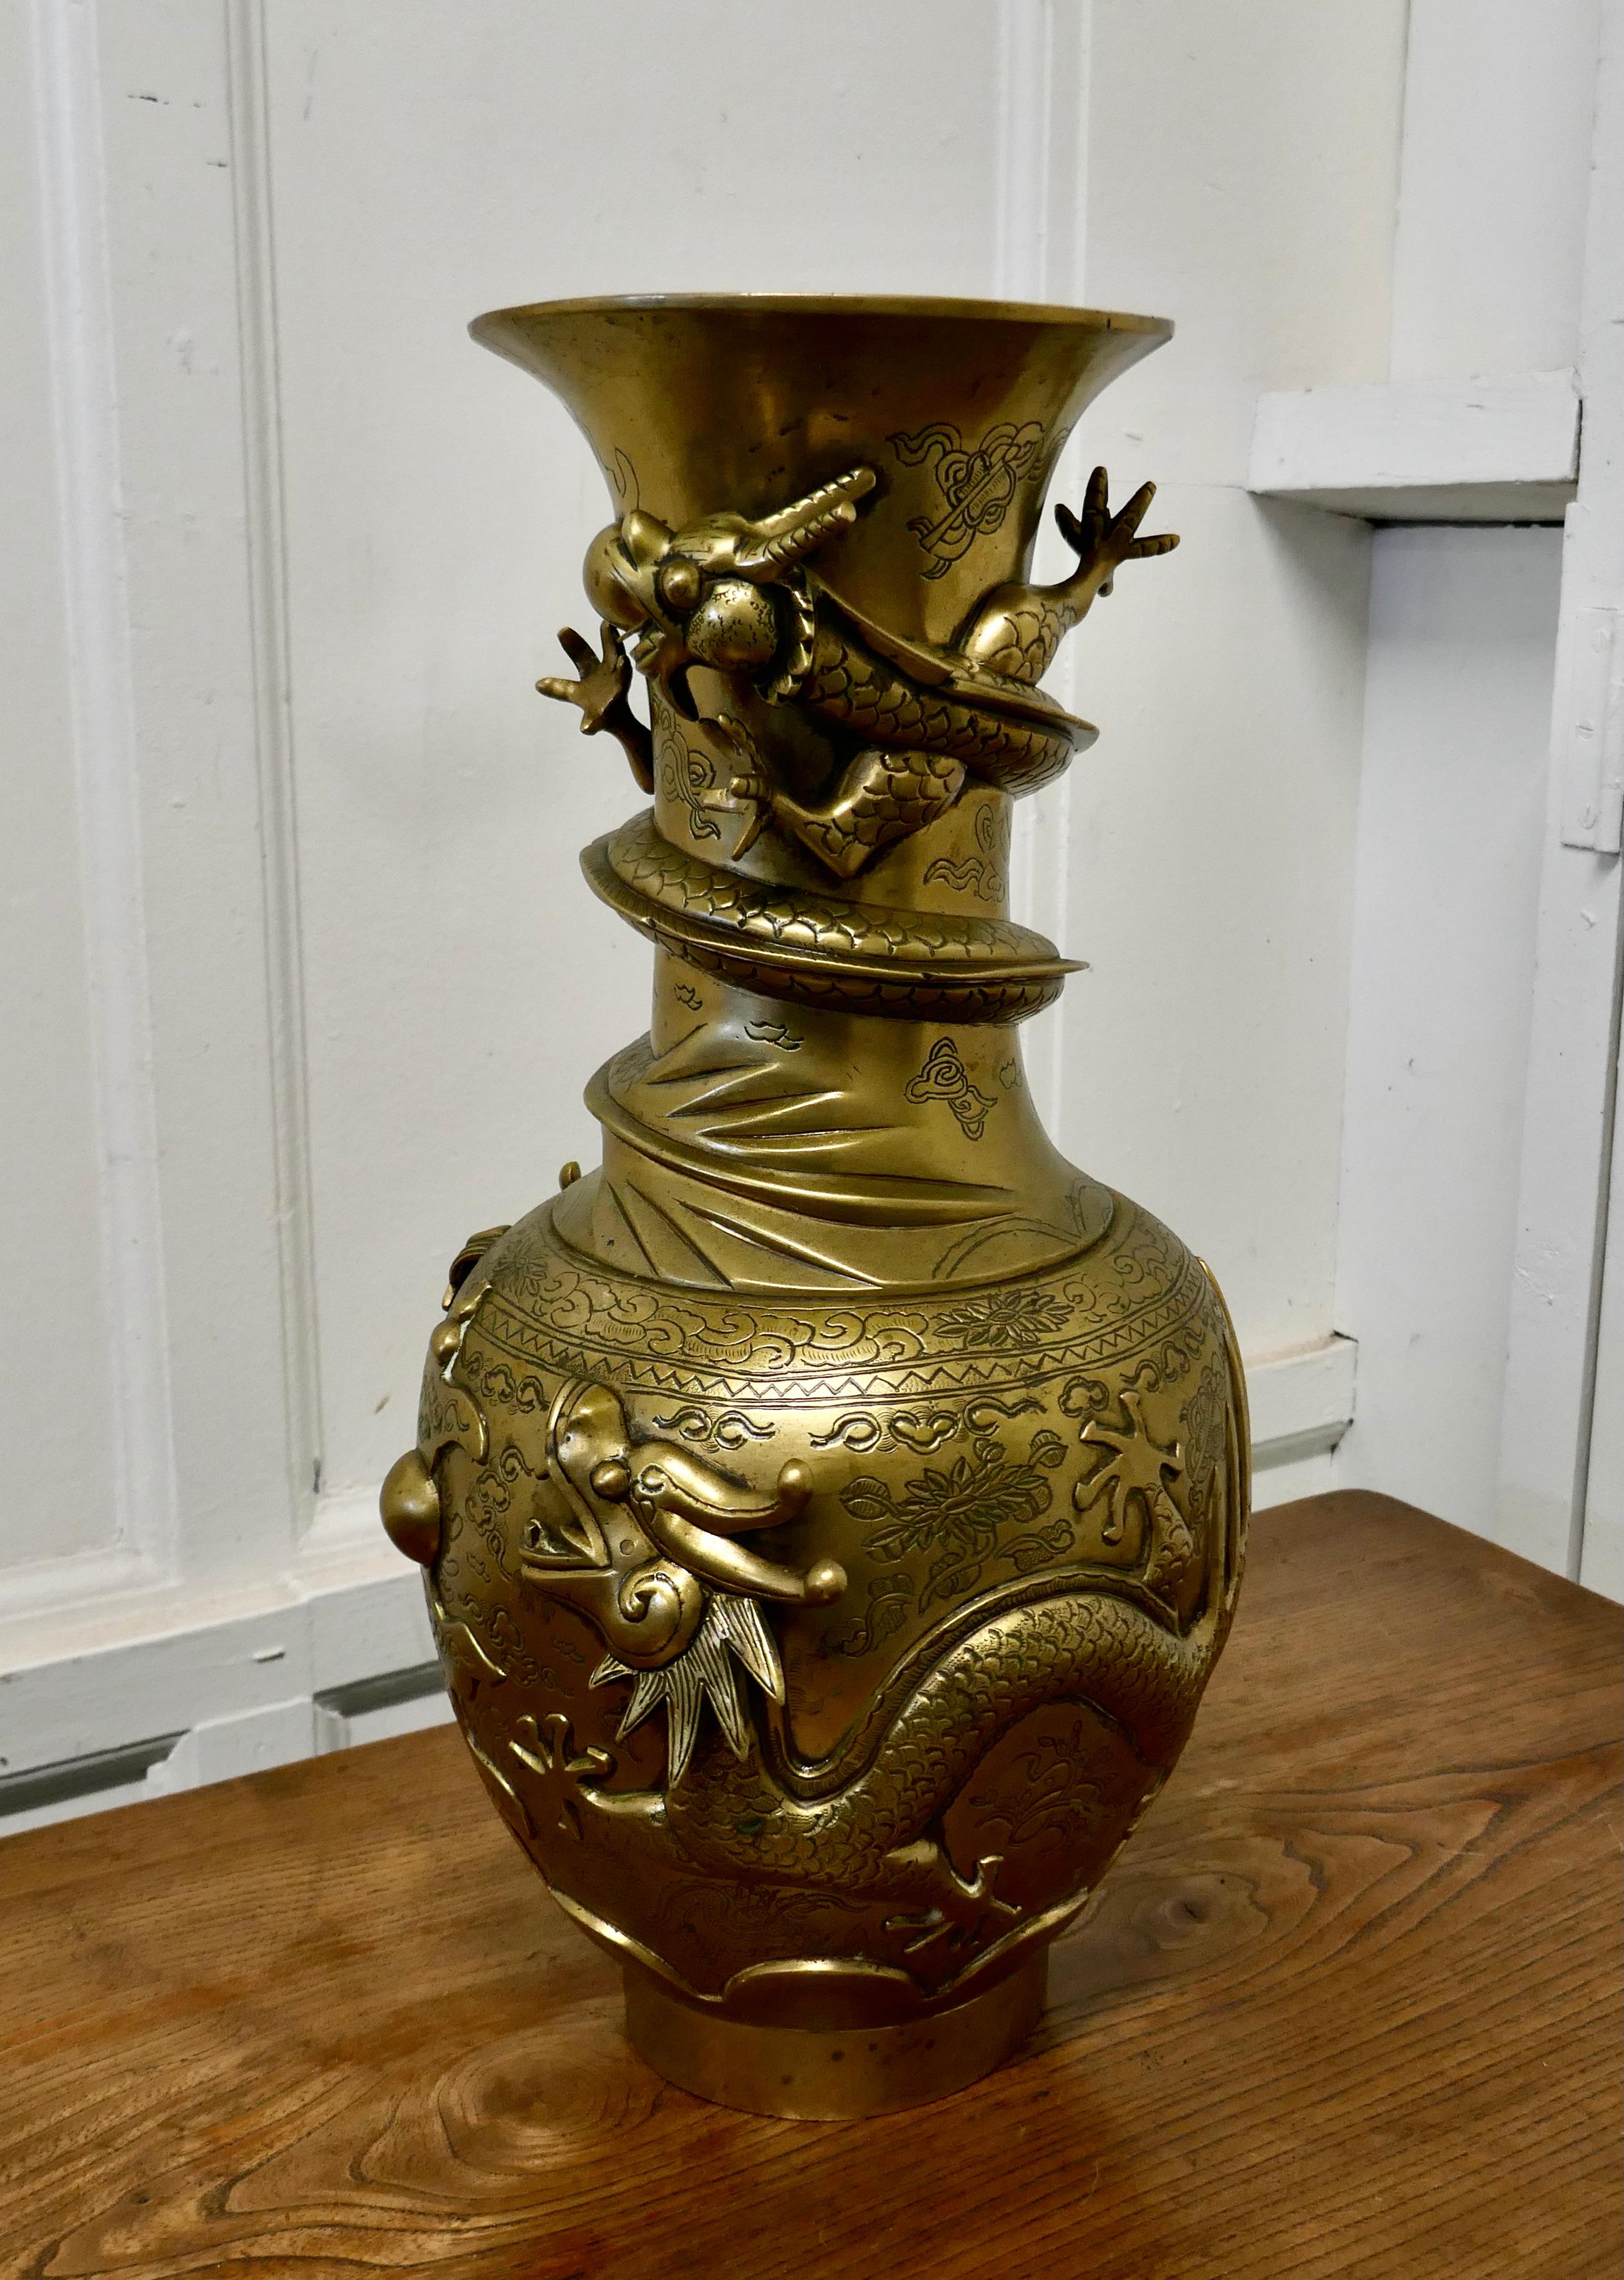 Grand vase oriental en laiton décoré du 19ème siècle

Il s'agit d'une grande pièce décorée en 3D de dragons féroces, avec un sceau très clair sur la face inférieure
Le pot a une très vieille réparation autour du sommet, sinon il est en bon état